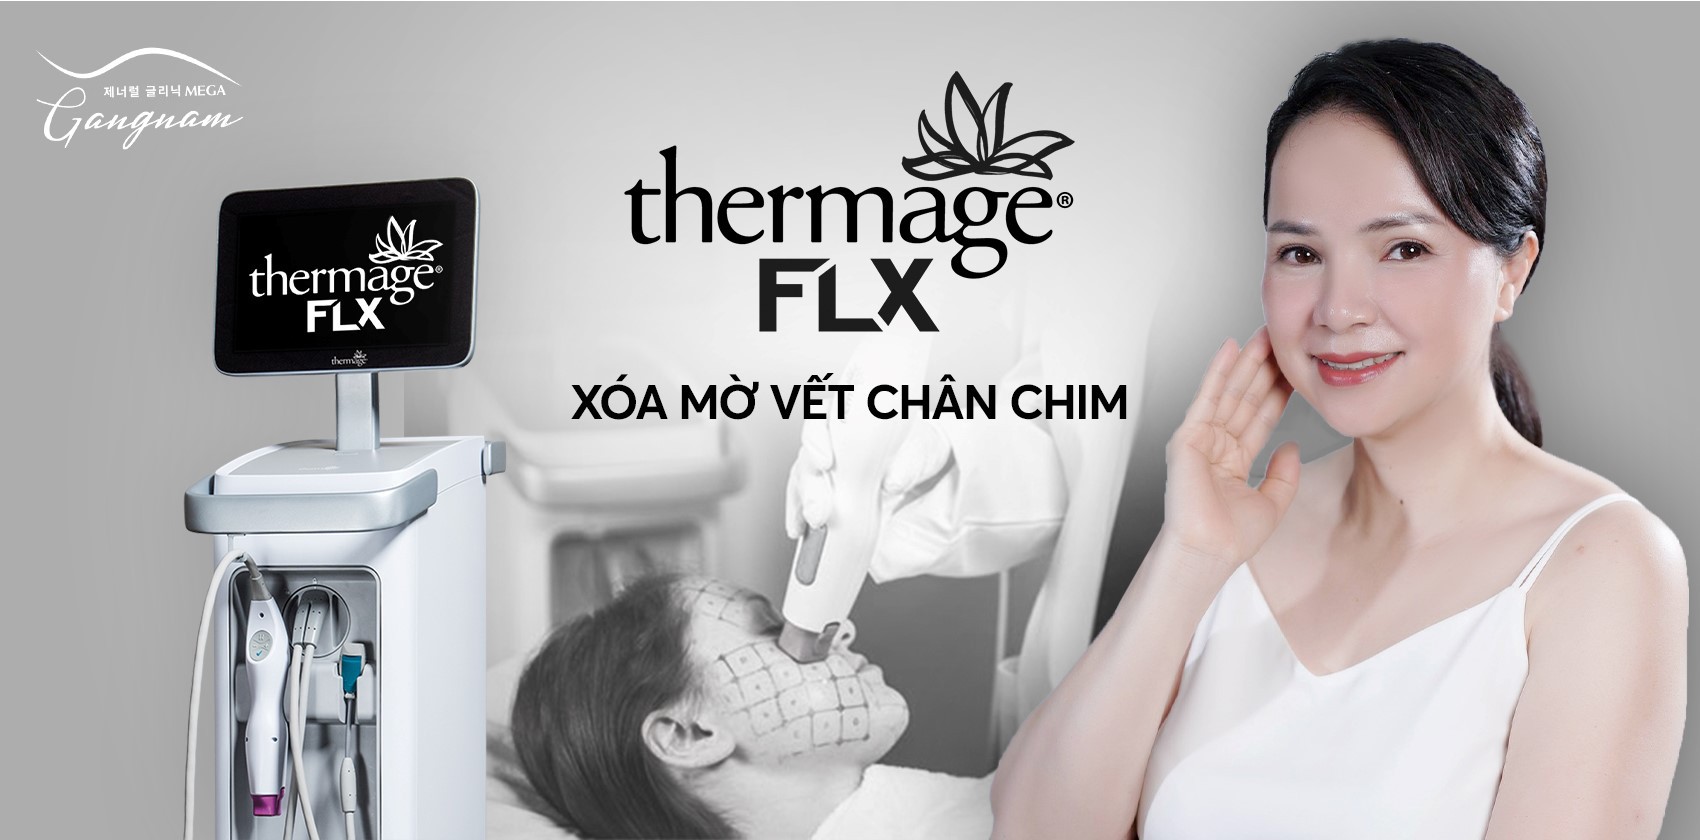 Thermage FLX công nghệ xóa mờ vết chân chim